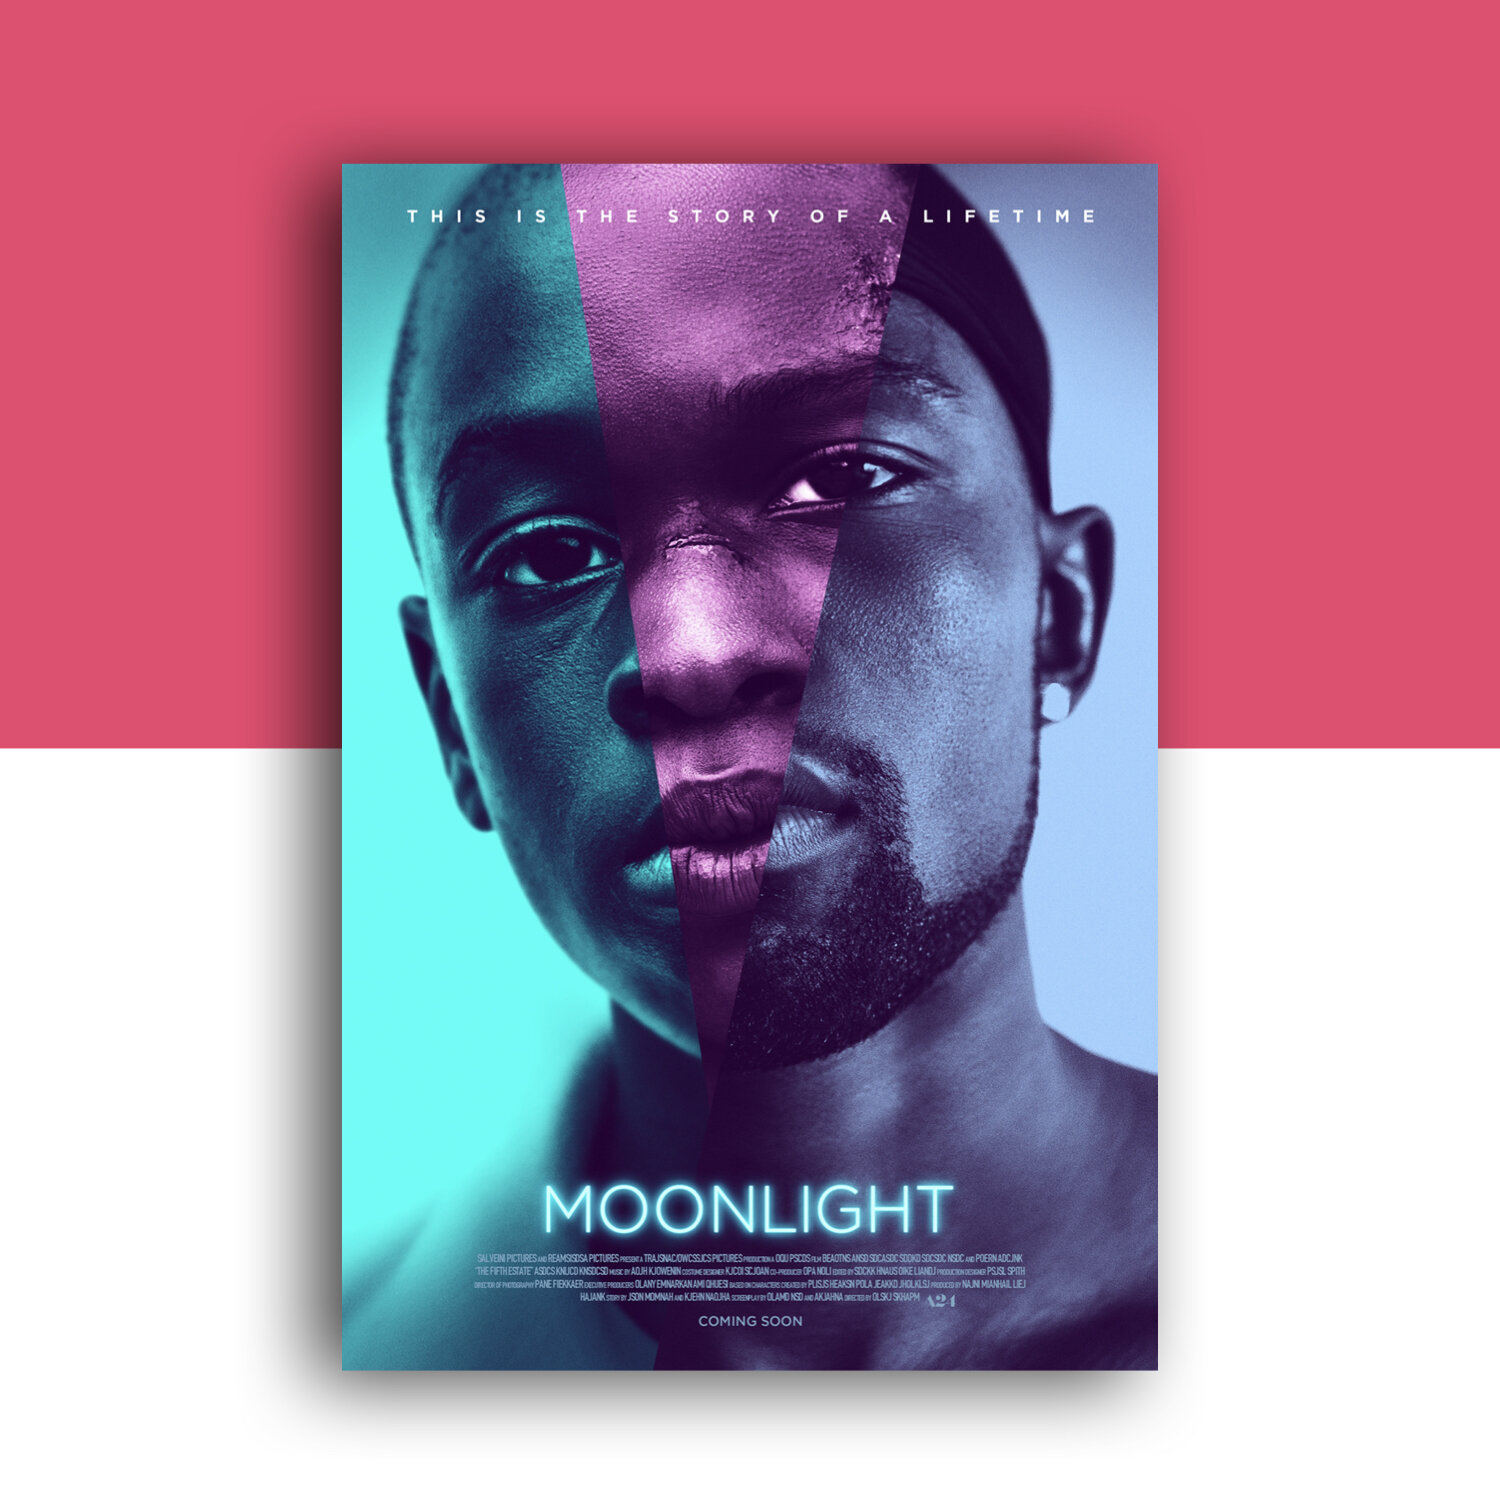 equality-superbloom-moonlight-movie.jpeg